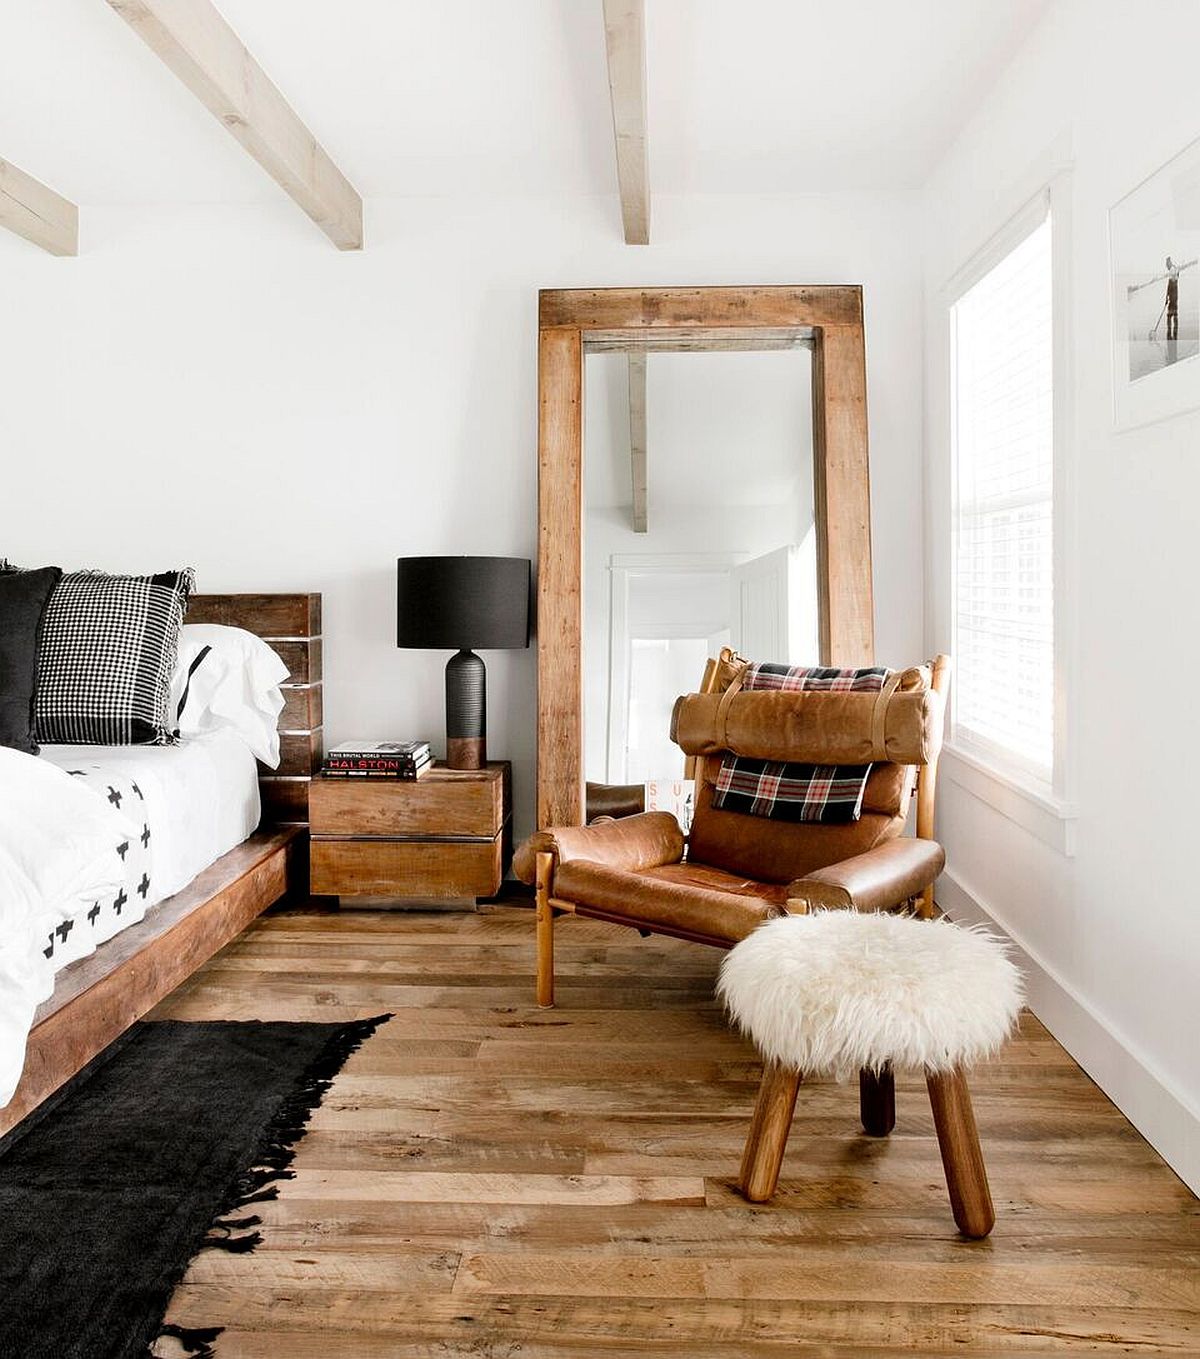 Giữa một phòng ngủ toàn sắc trắng, nội thất bằng gỗ trở nên bắt mắt và ấm áp vô cùng!